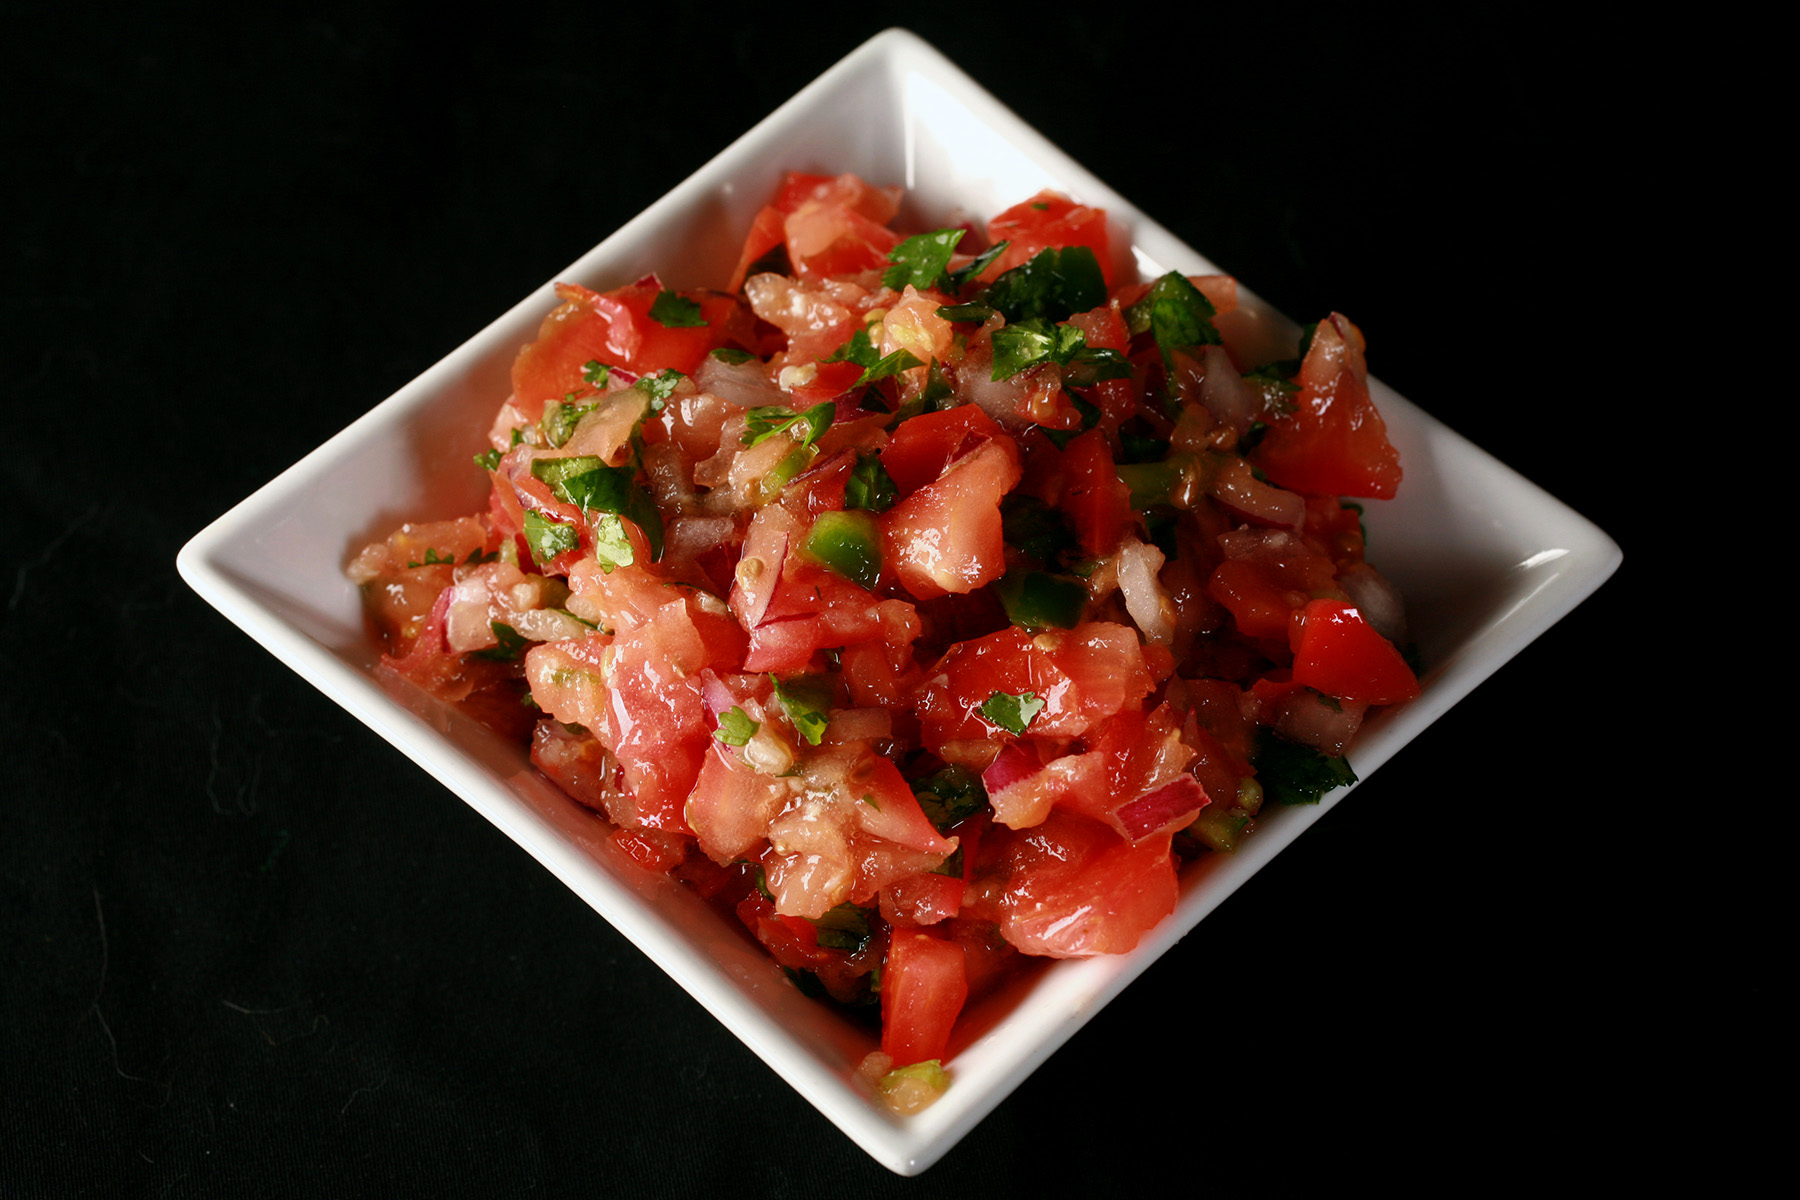 A bowl of keto pico de gallo style salsa.